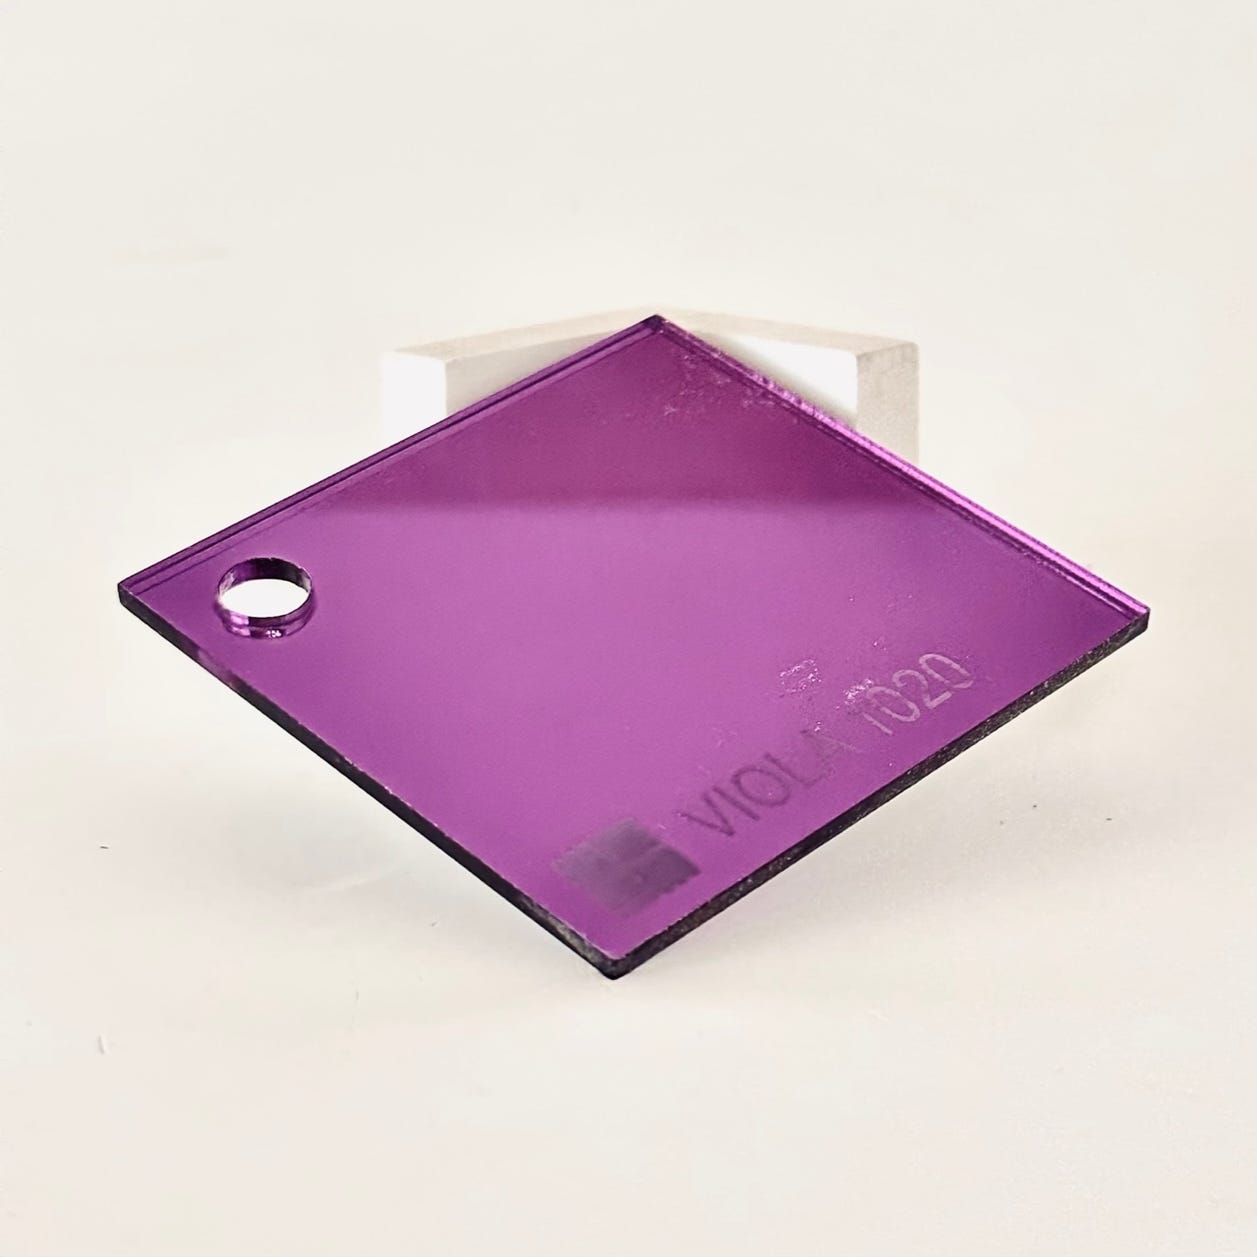 Plancha de metacrilato Tauro Transparente 100x50 5 mm de grosor.  Resistente, Transparente y Versátil.